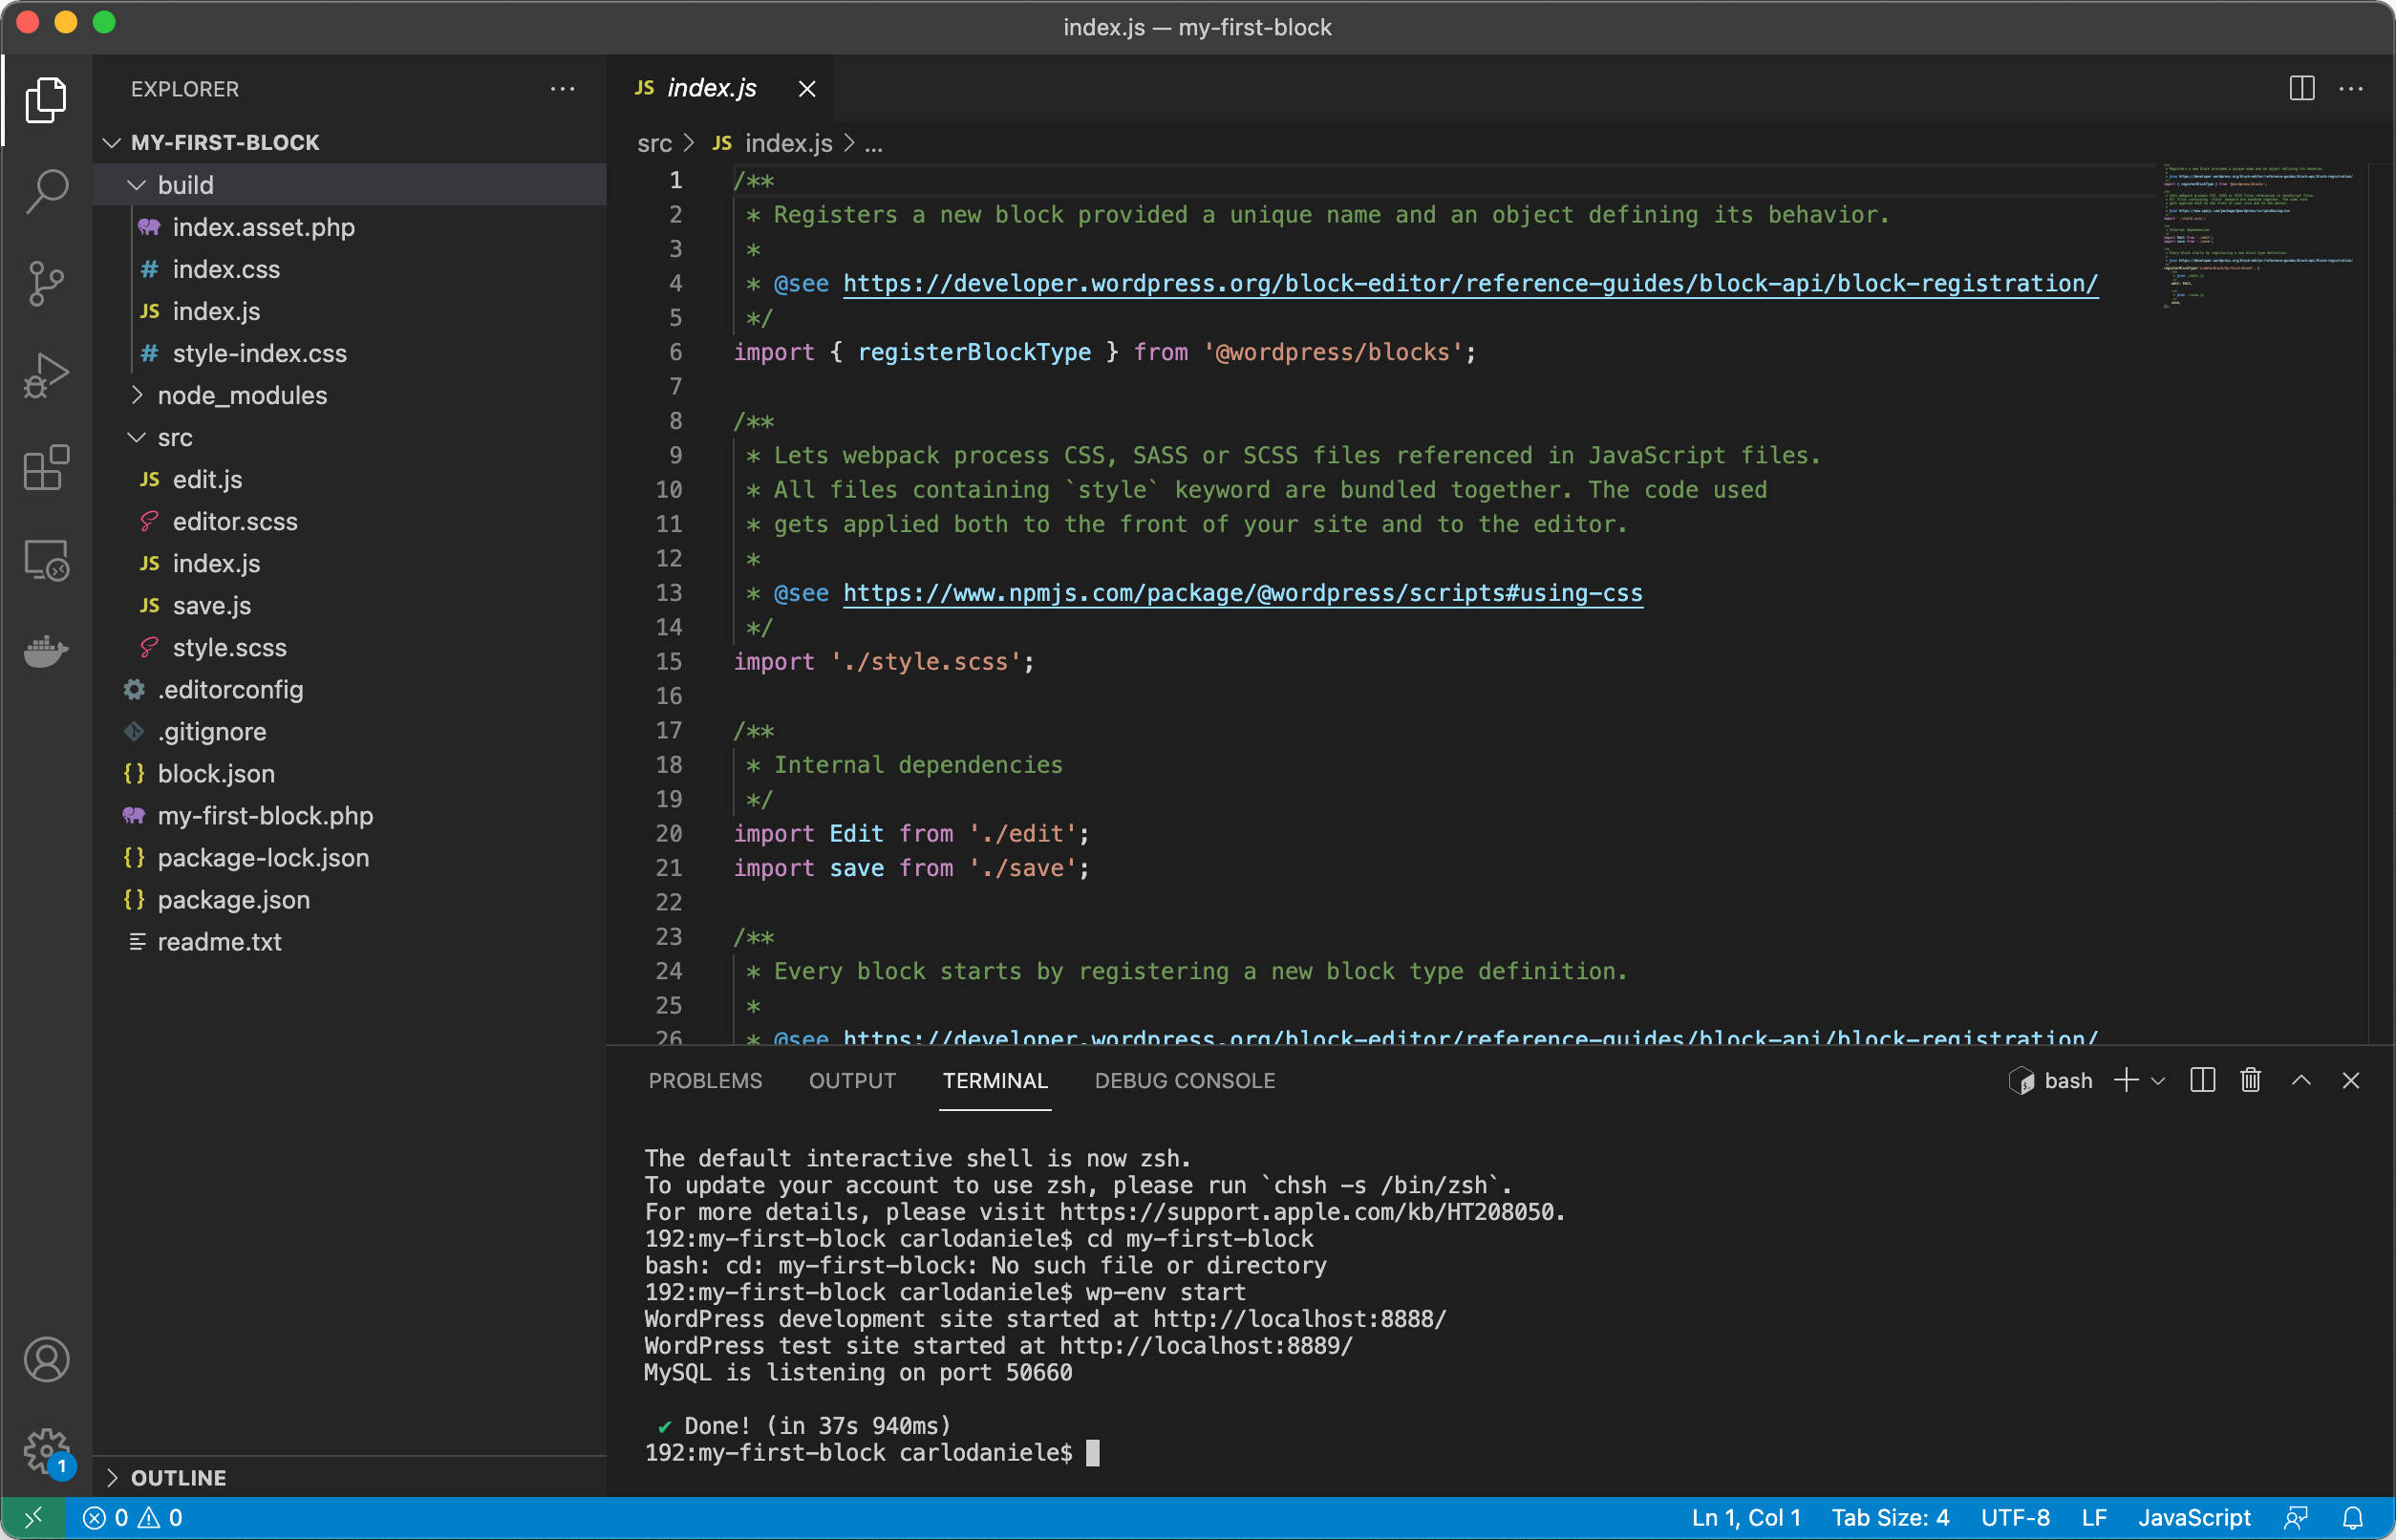 Befehle aus dem Visual Studio Code Terminal ausführen.